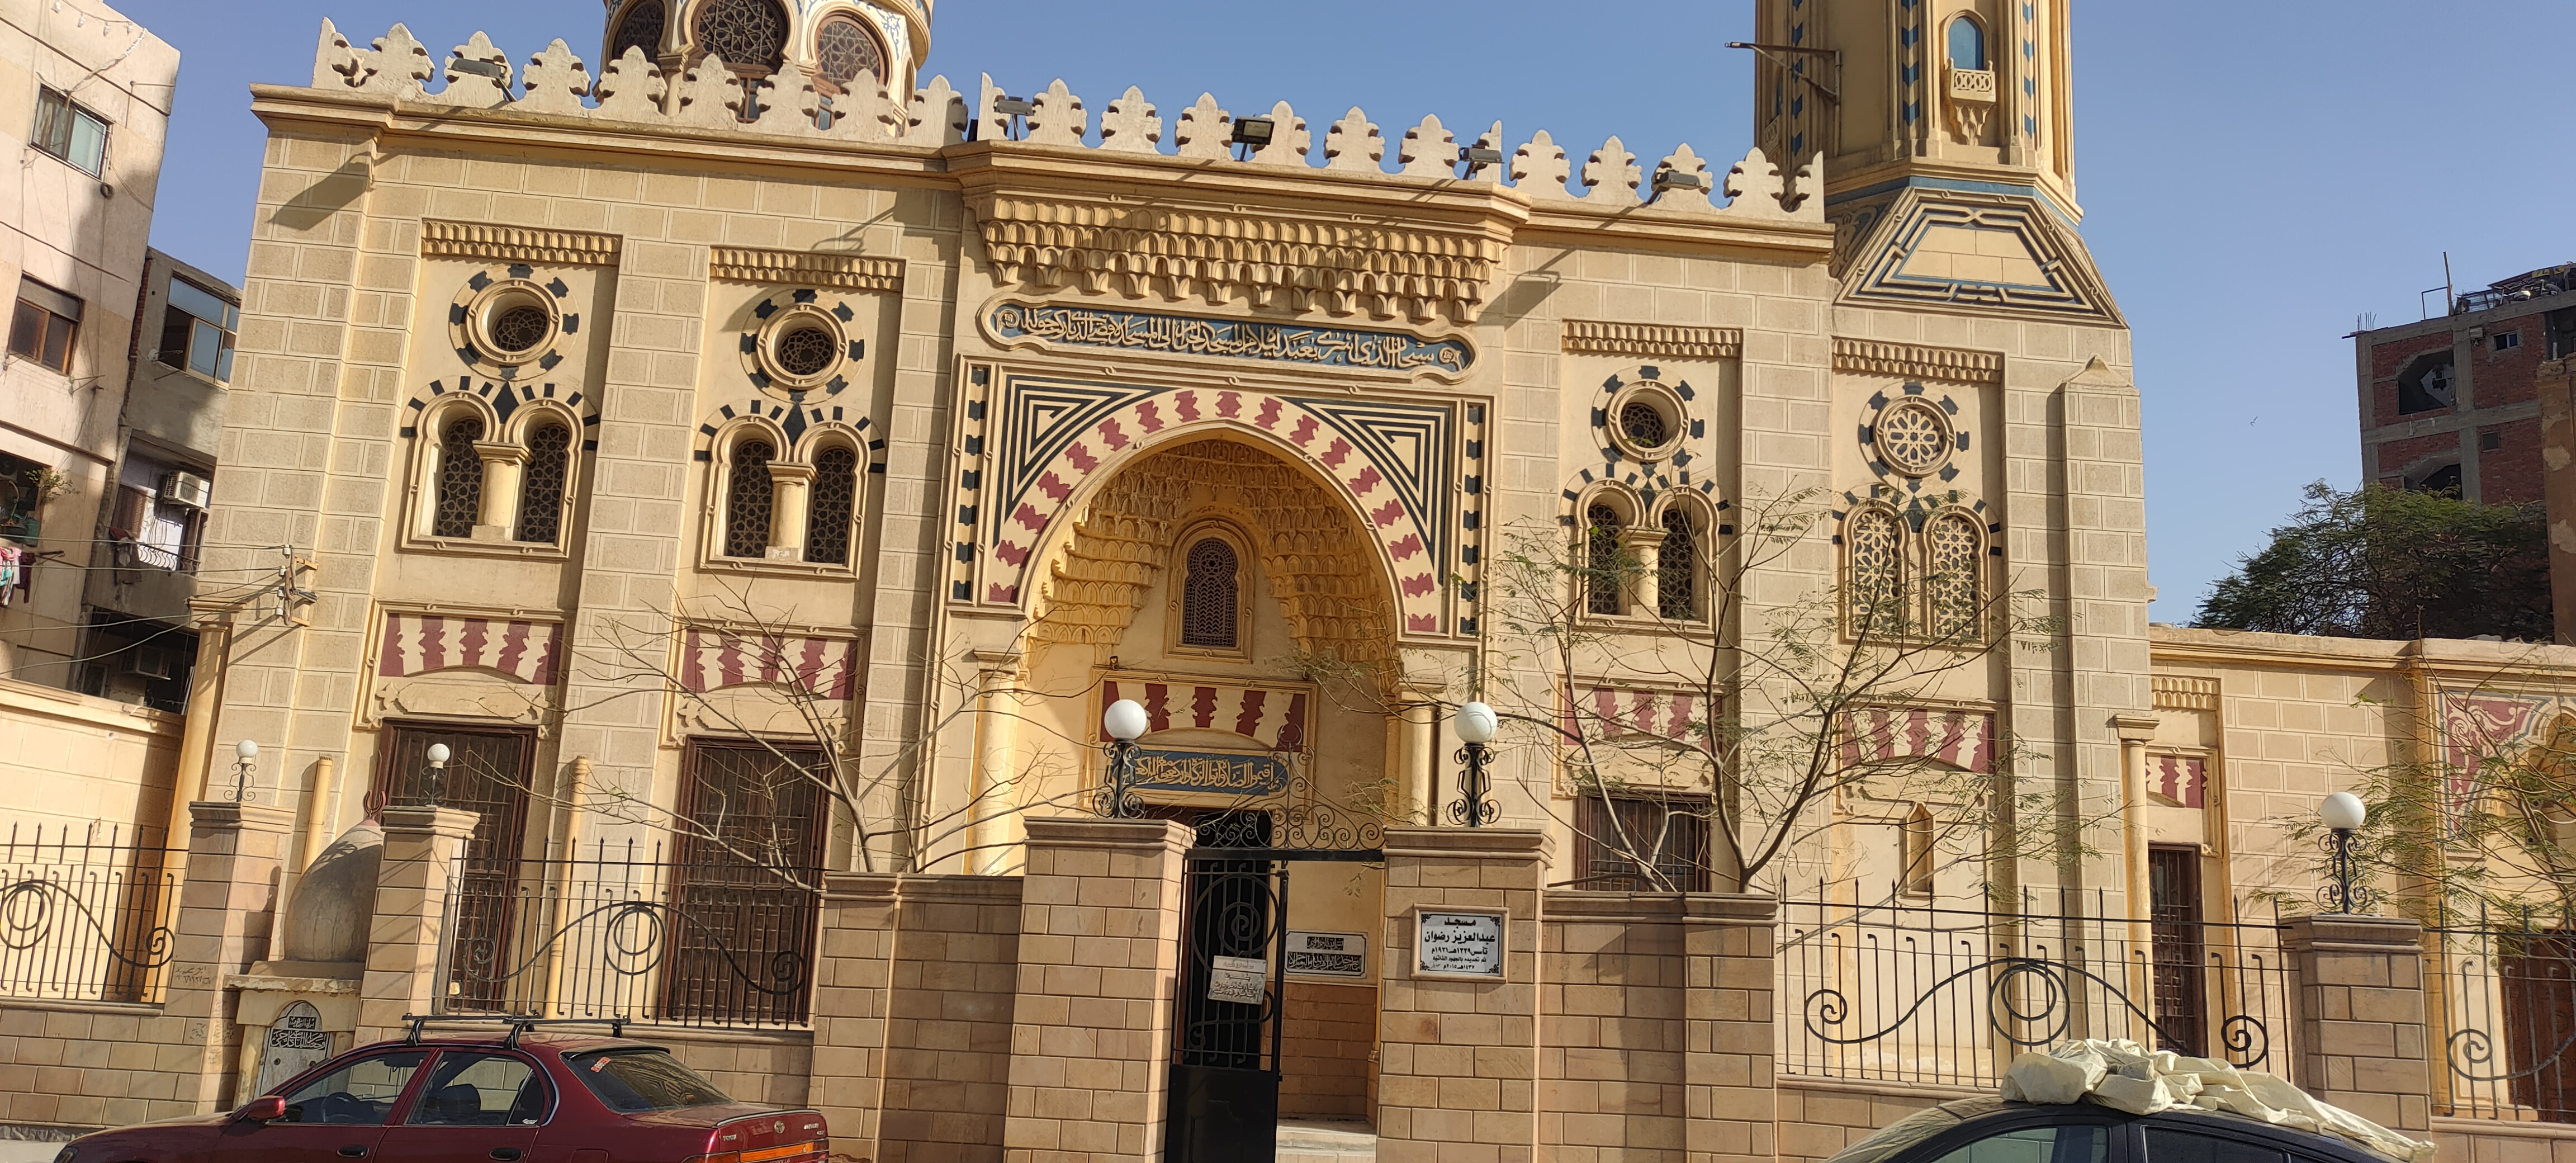 مسجد عبدالعزيز رضوان تحفة معمارية إسلامية (7)